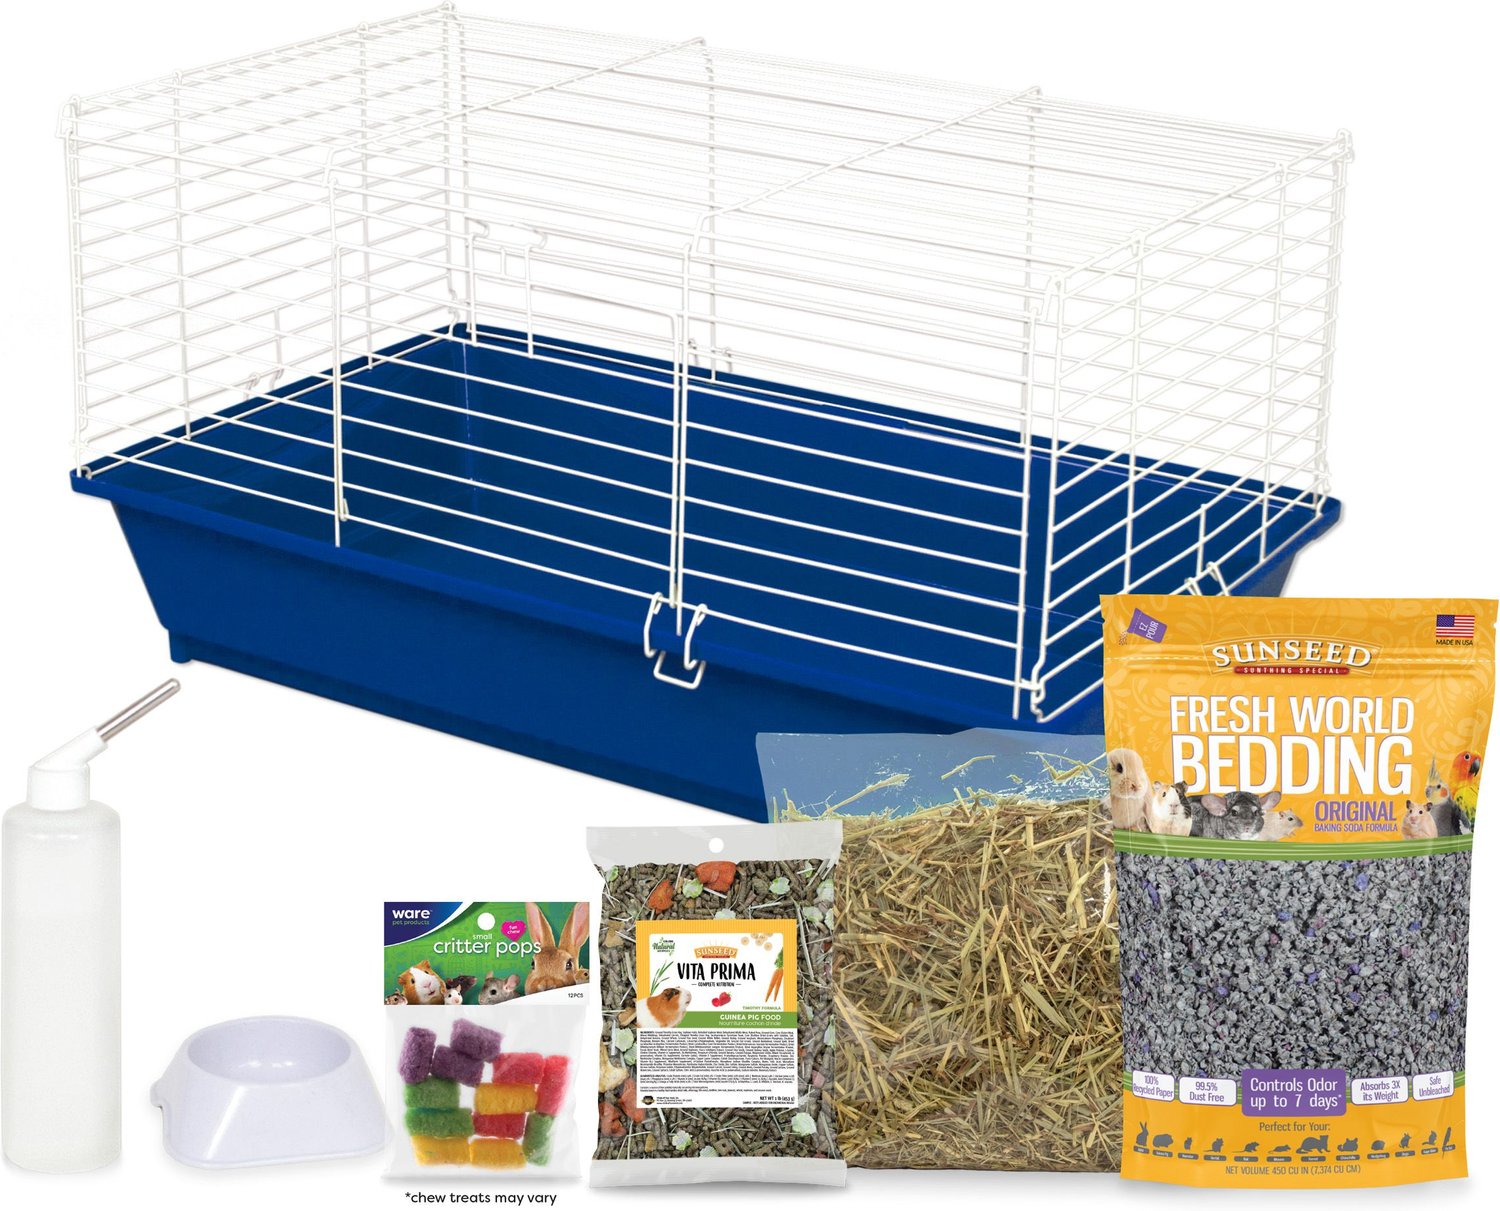 guinea pig starter kit